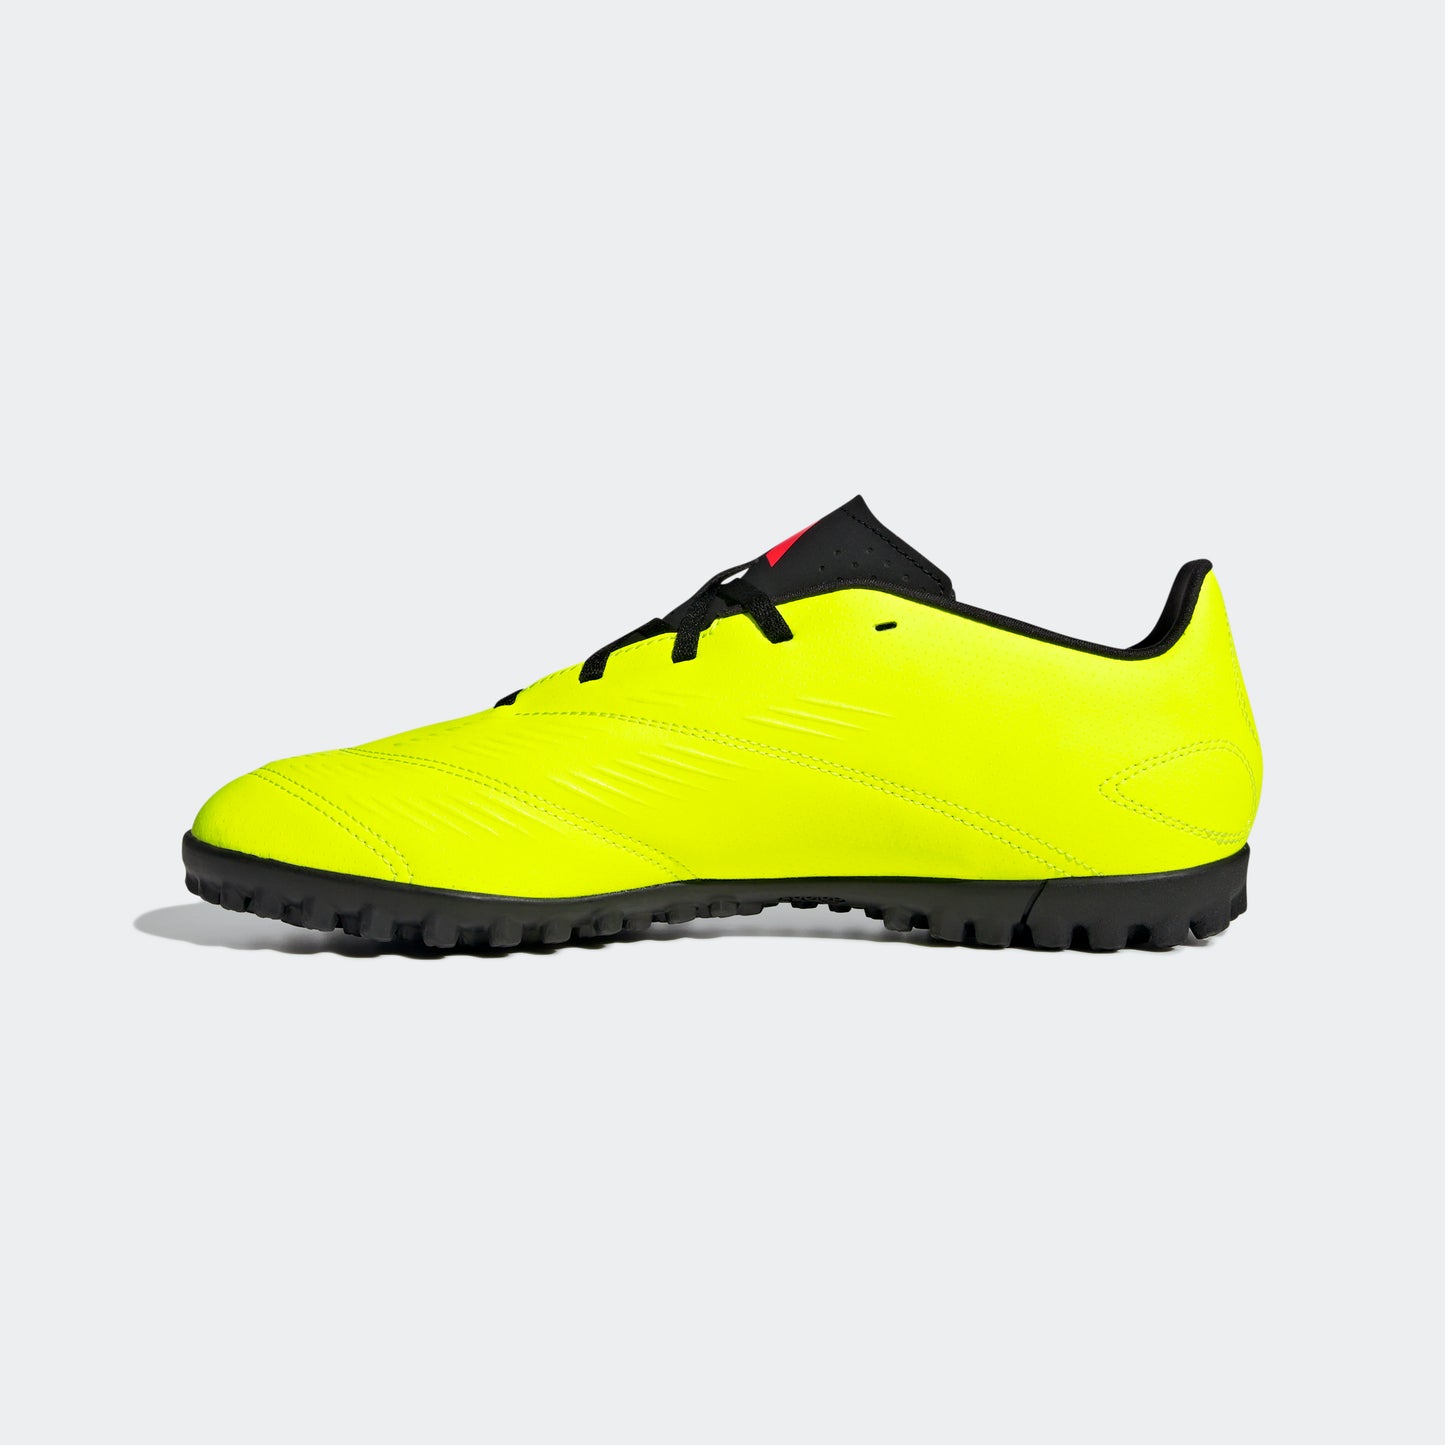 נעלי קטרגל לגברים PREDATOR CLUB TURF בצבע צהוב זוהר ושחור